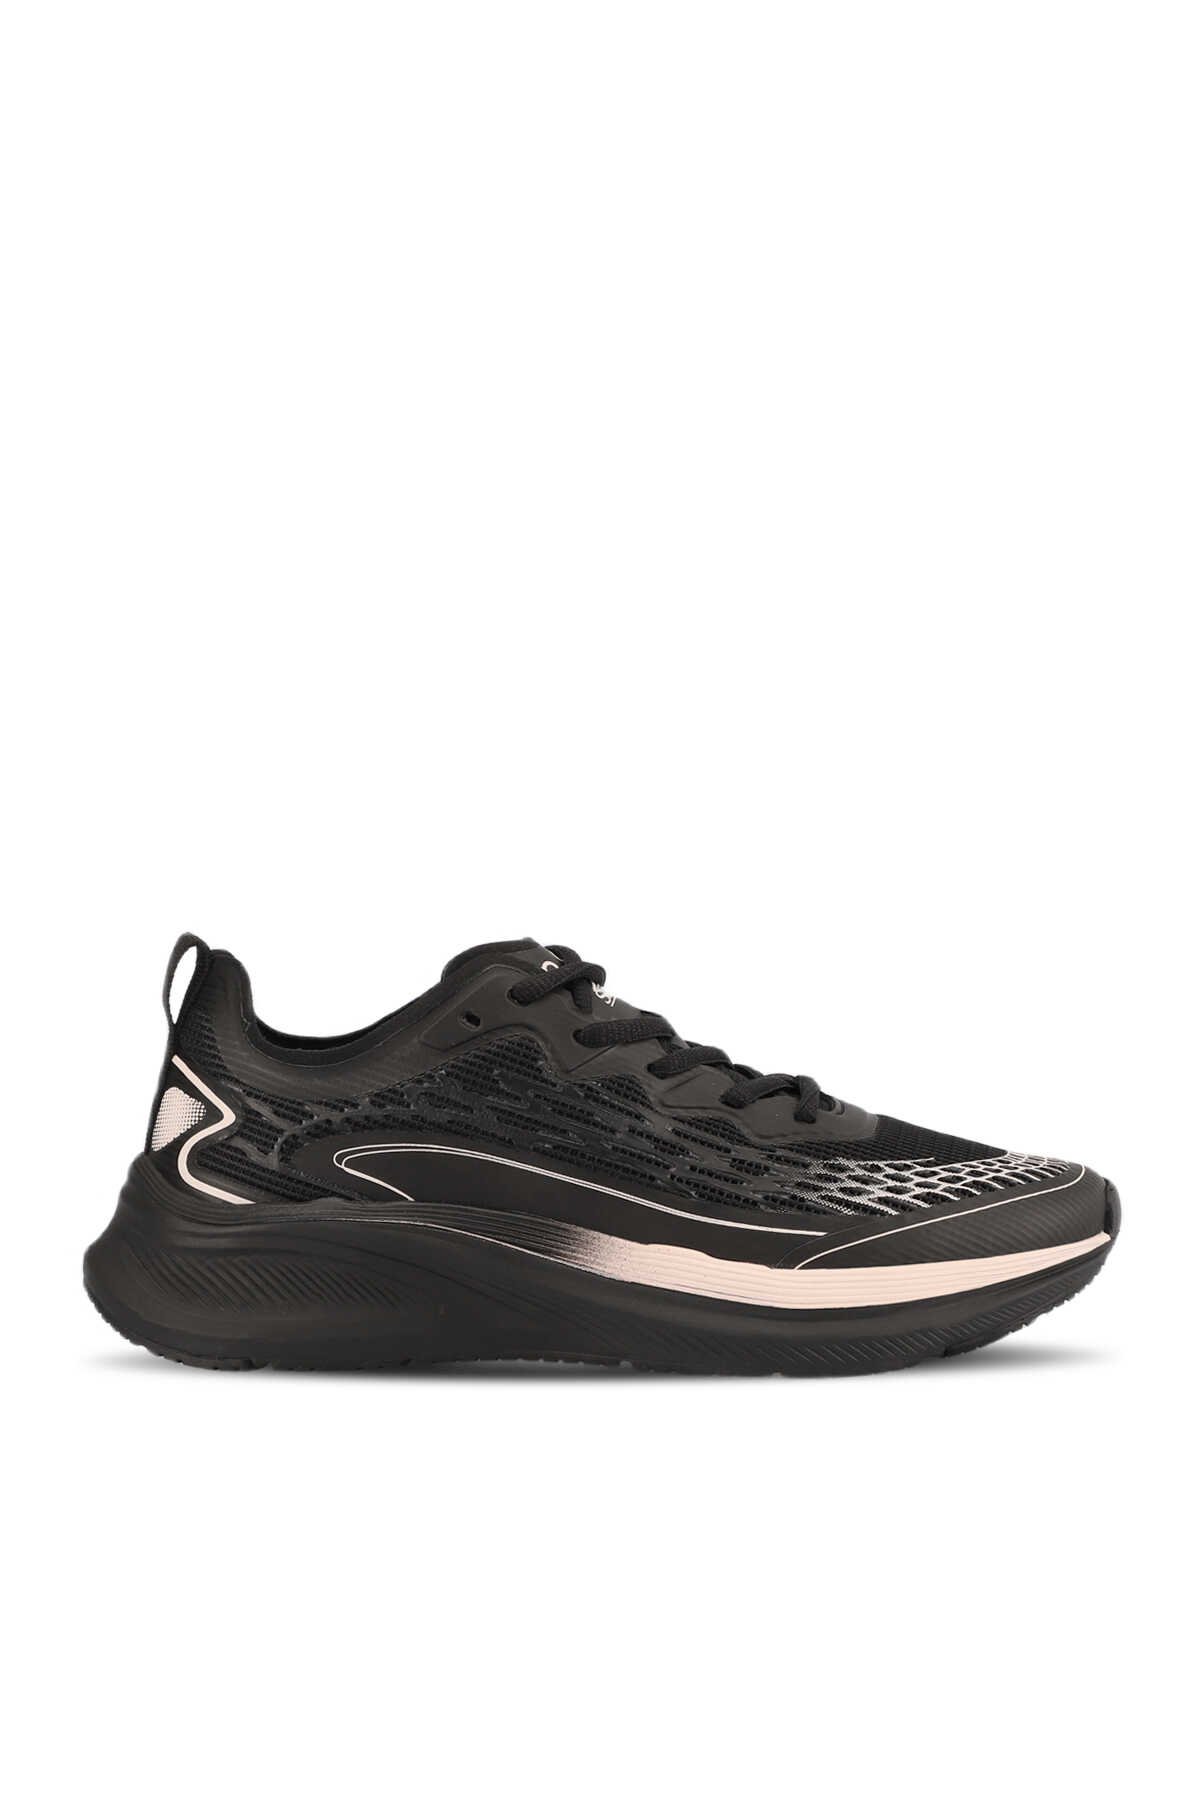 Slazenger - Slazenger WADE Sneaker Kadın Ayakkabı Siyah